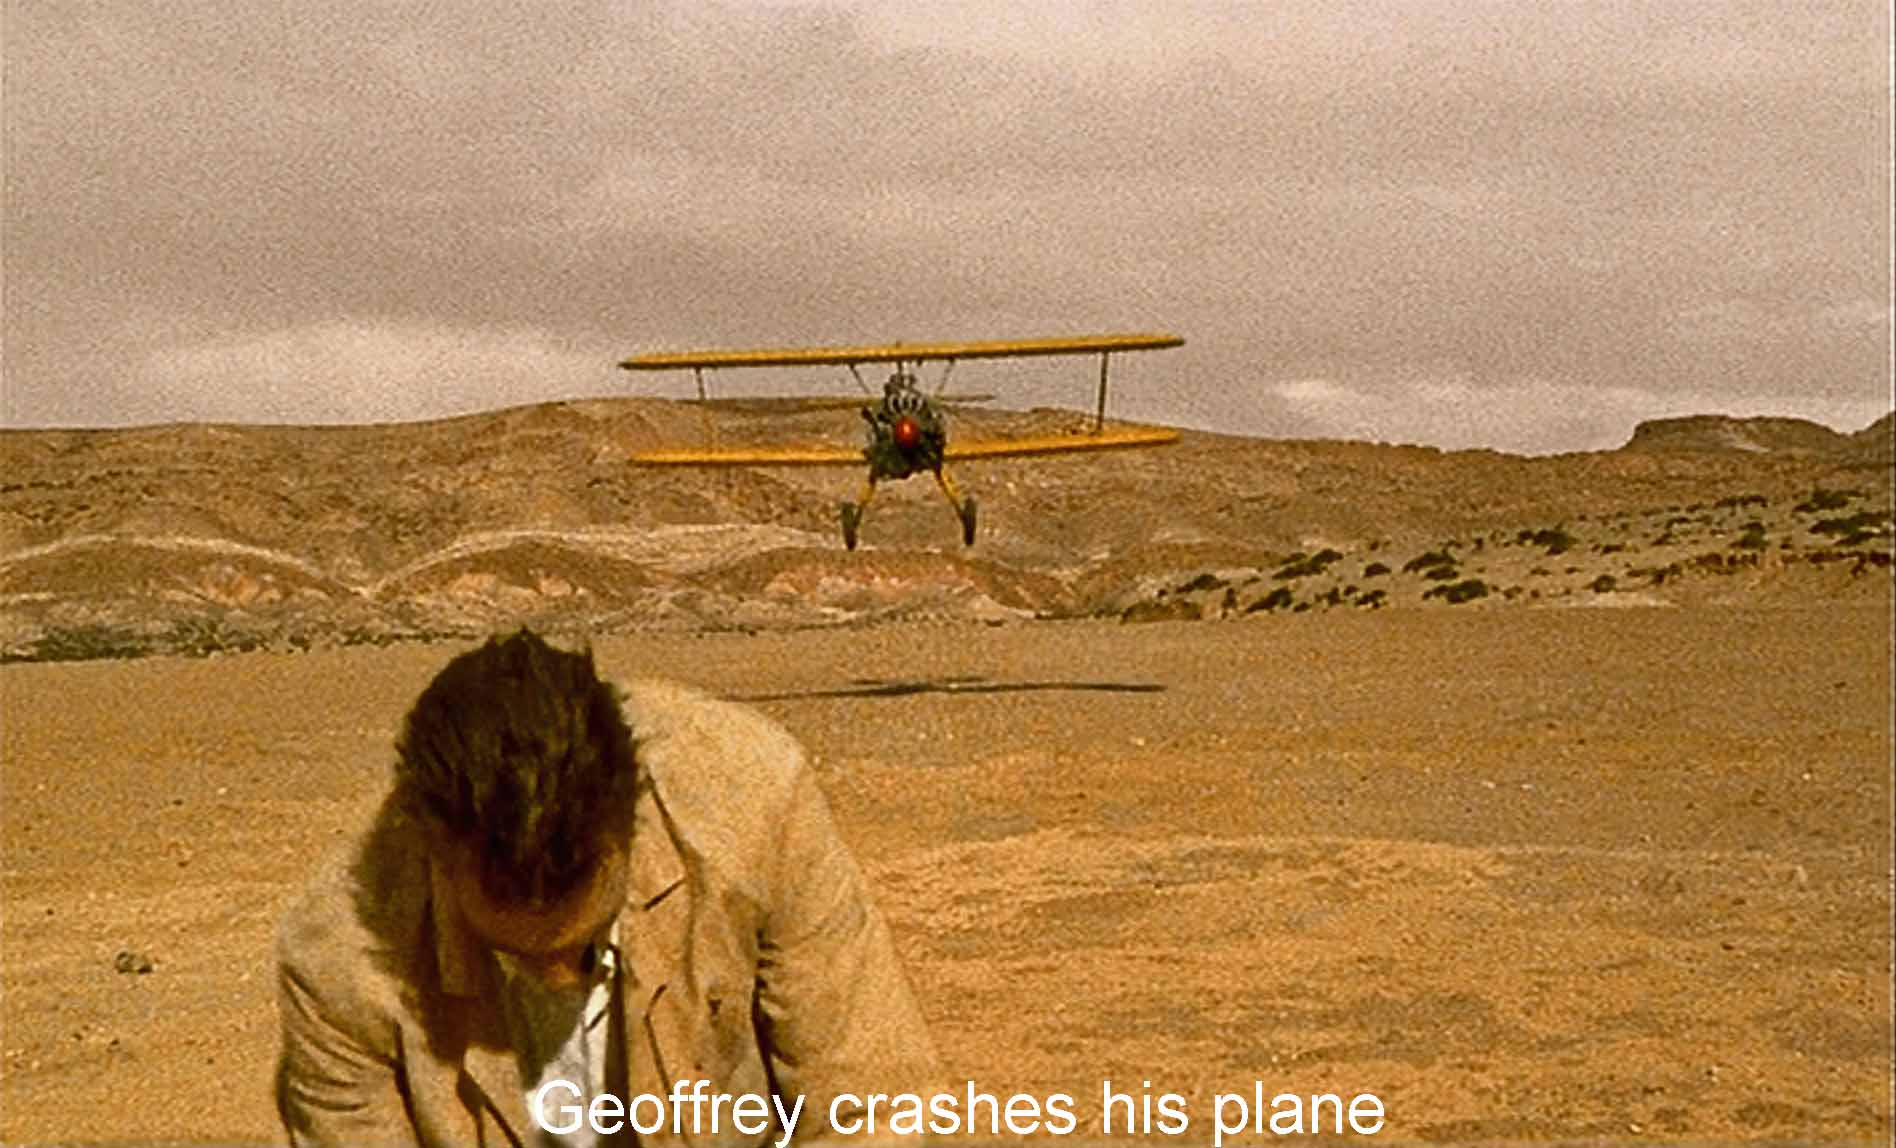 Geoffrey crashes his plane